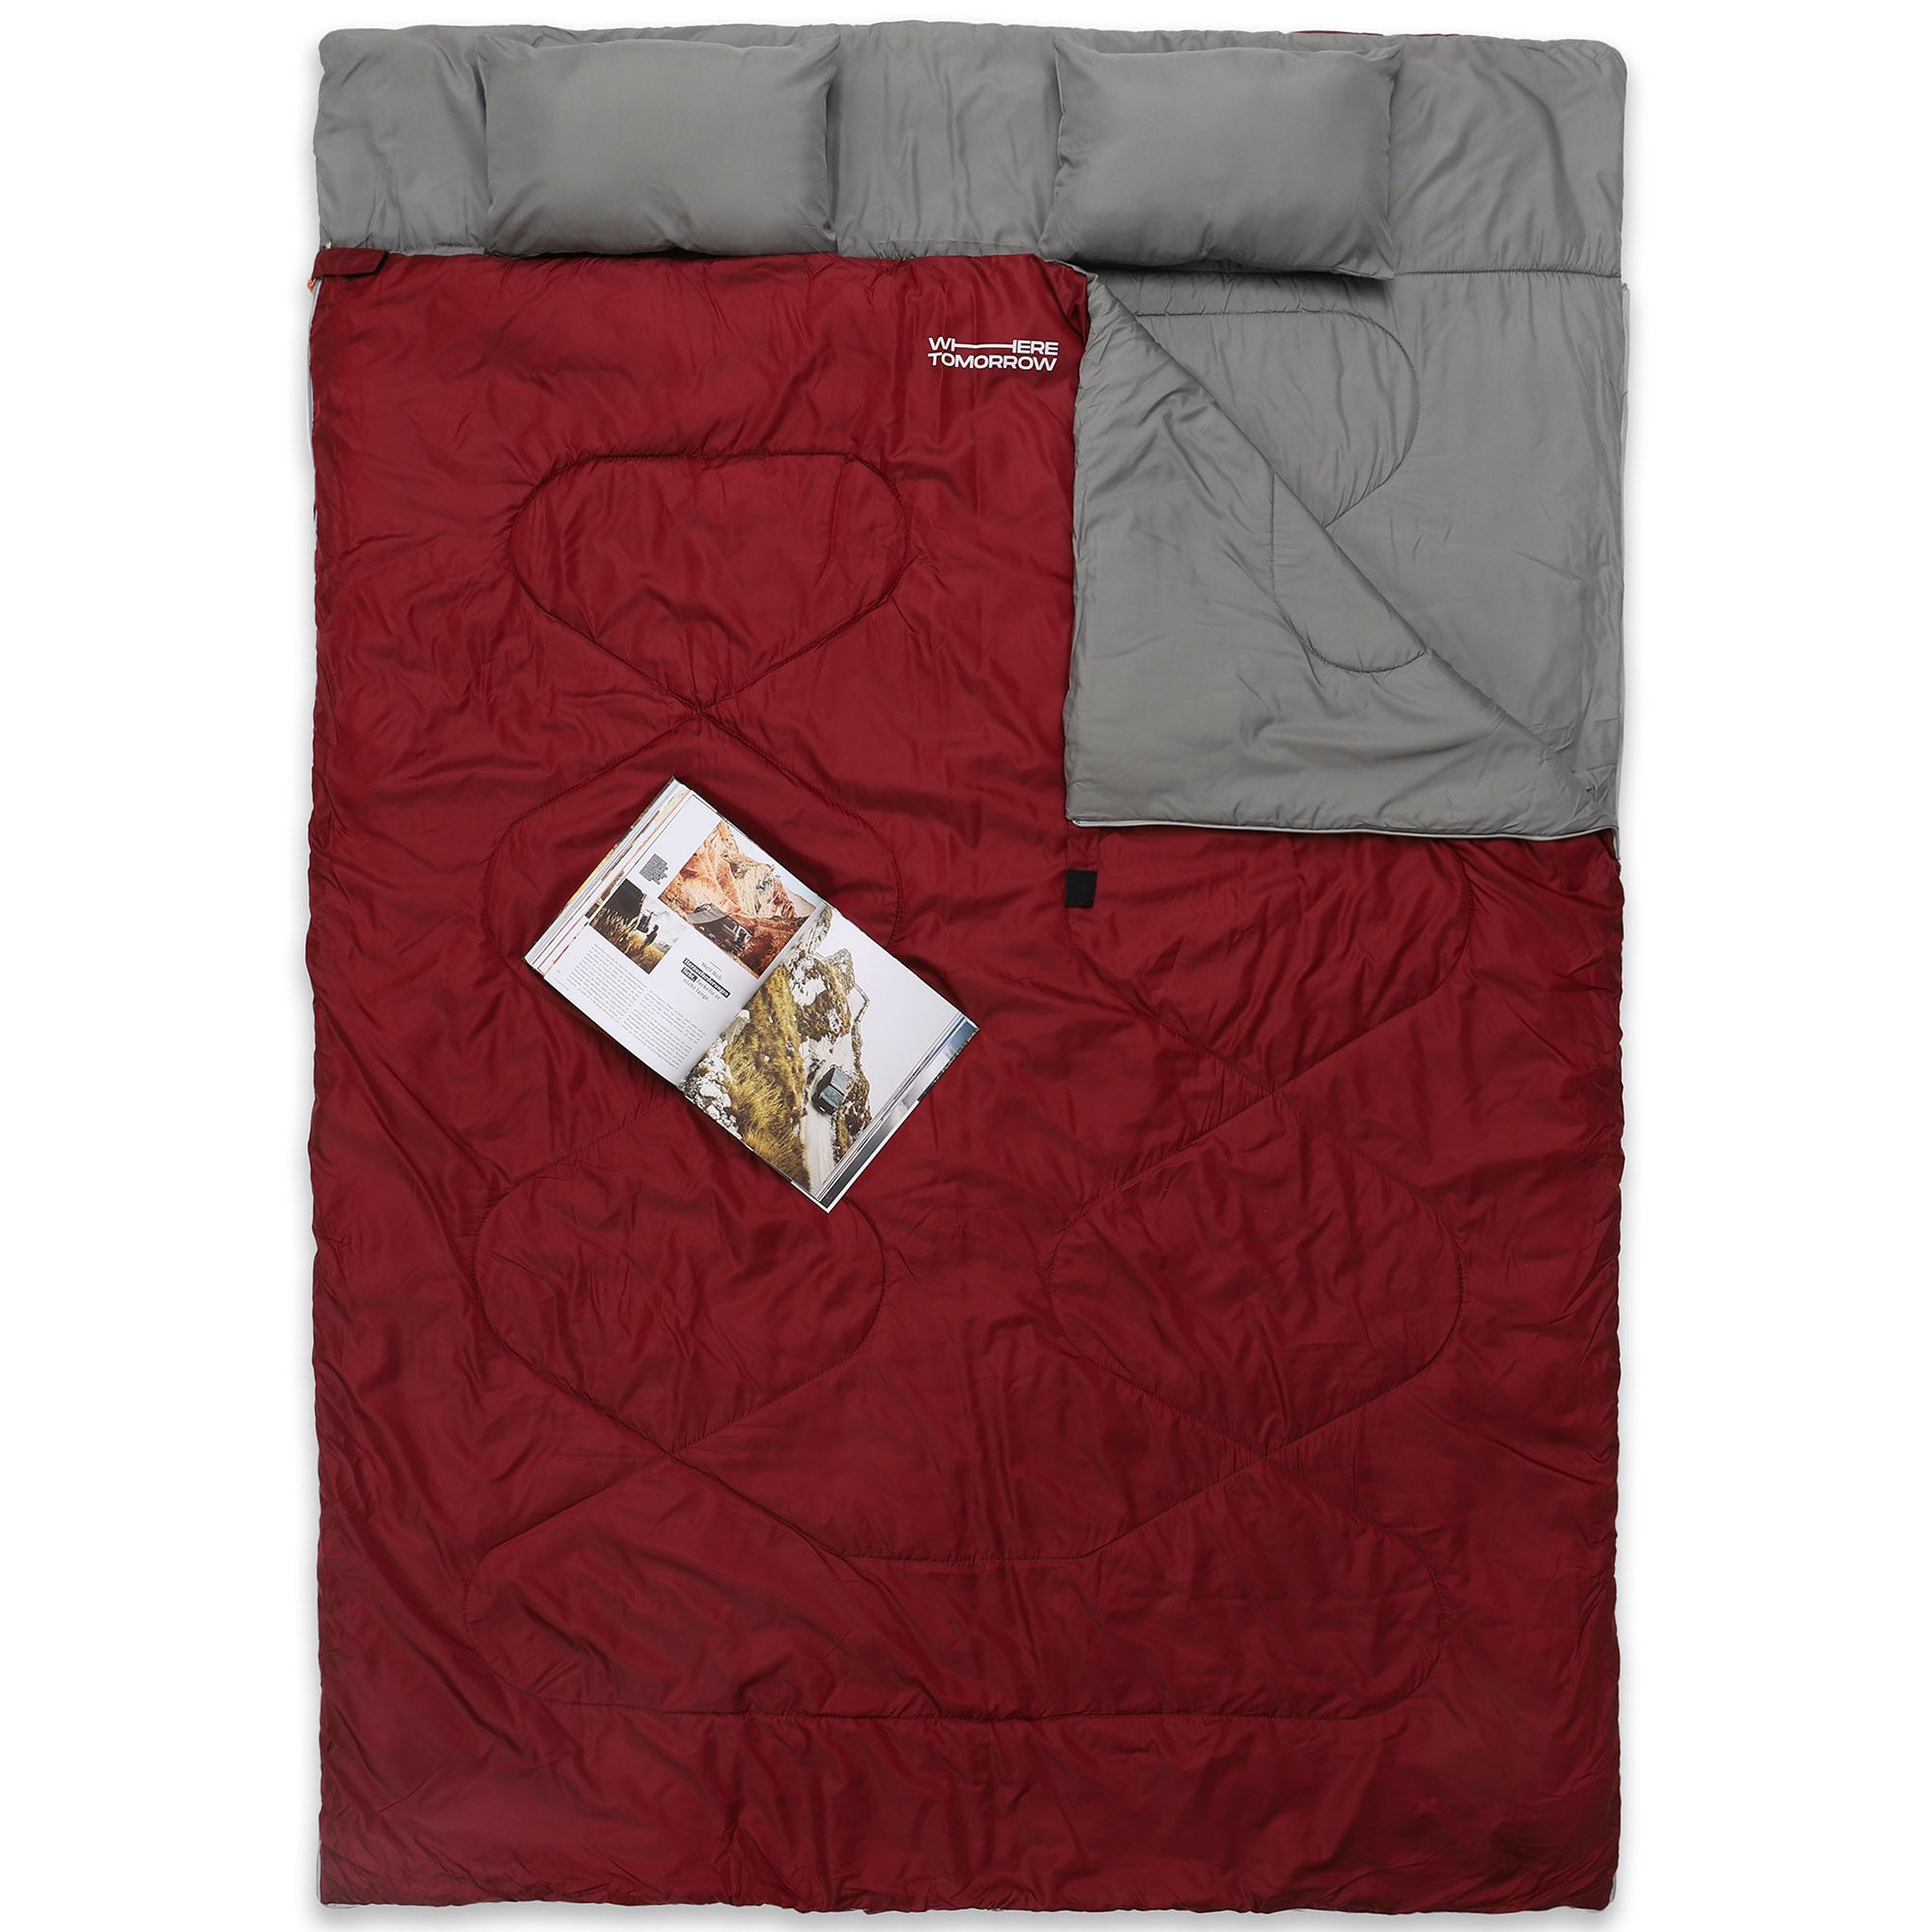 Doppelschlafsack mit Tragetasche - 2-Personen Schlafsack - 190 x 150 cm - Weinr